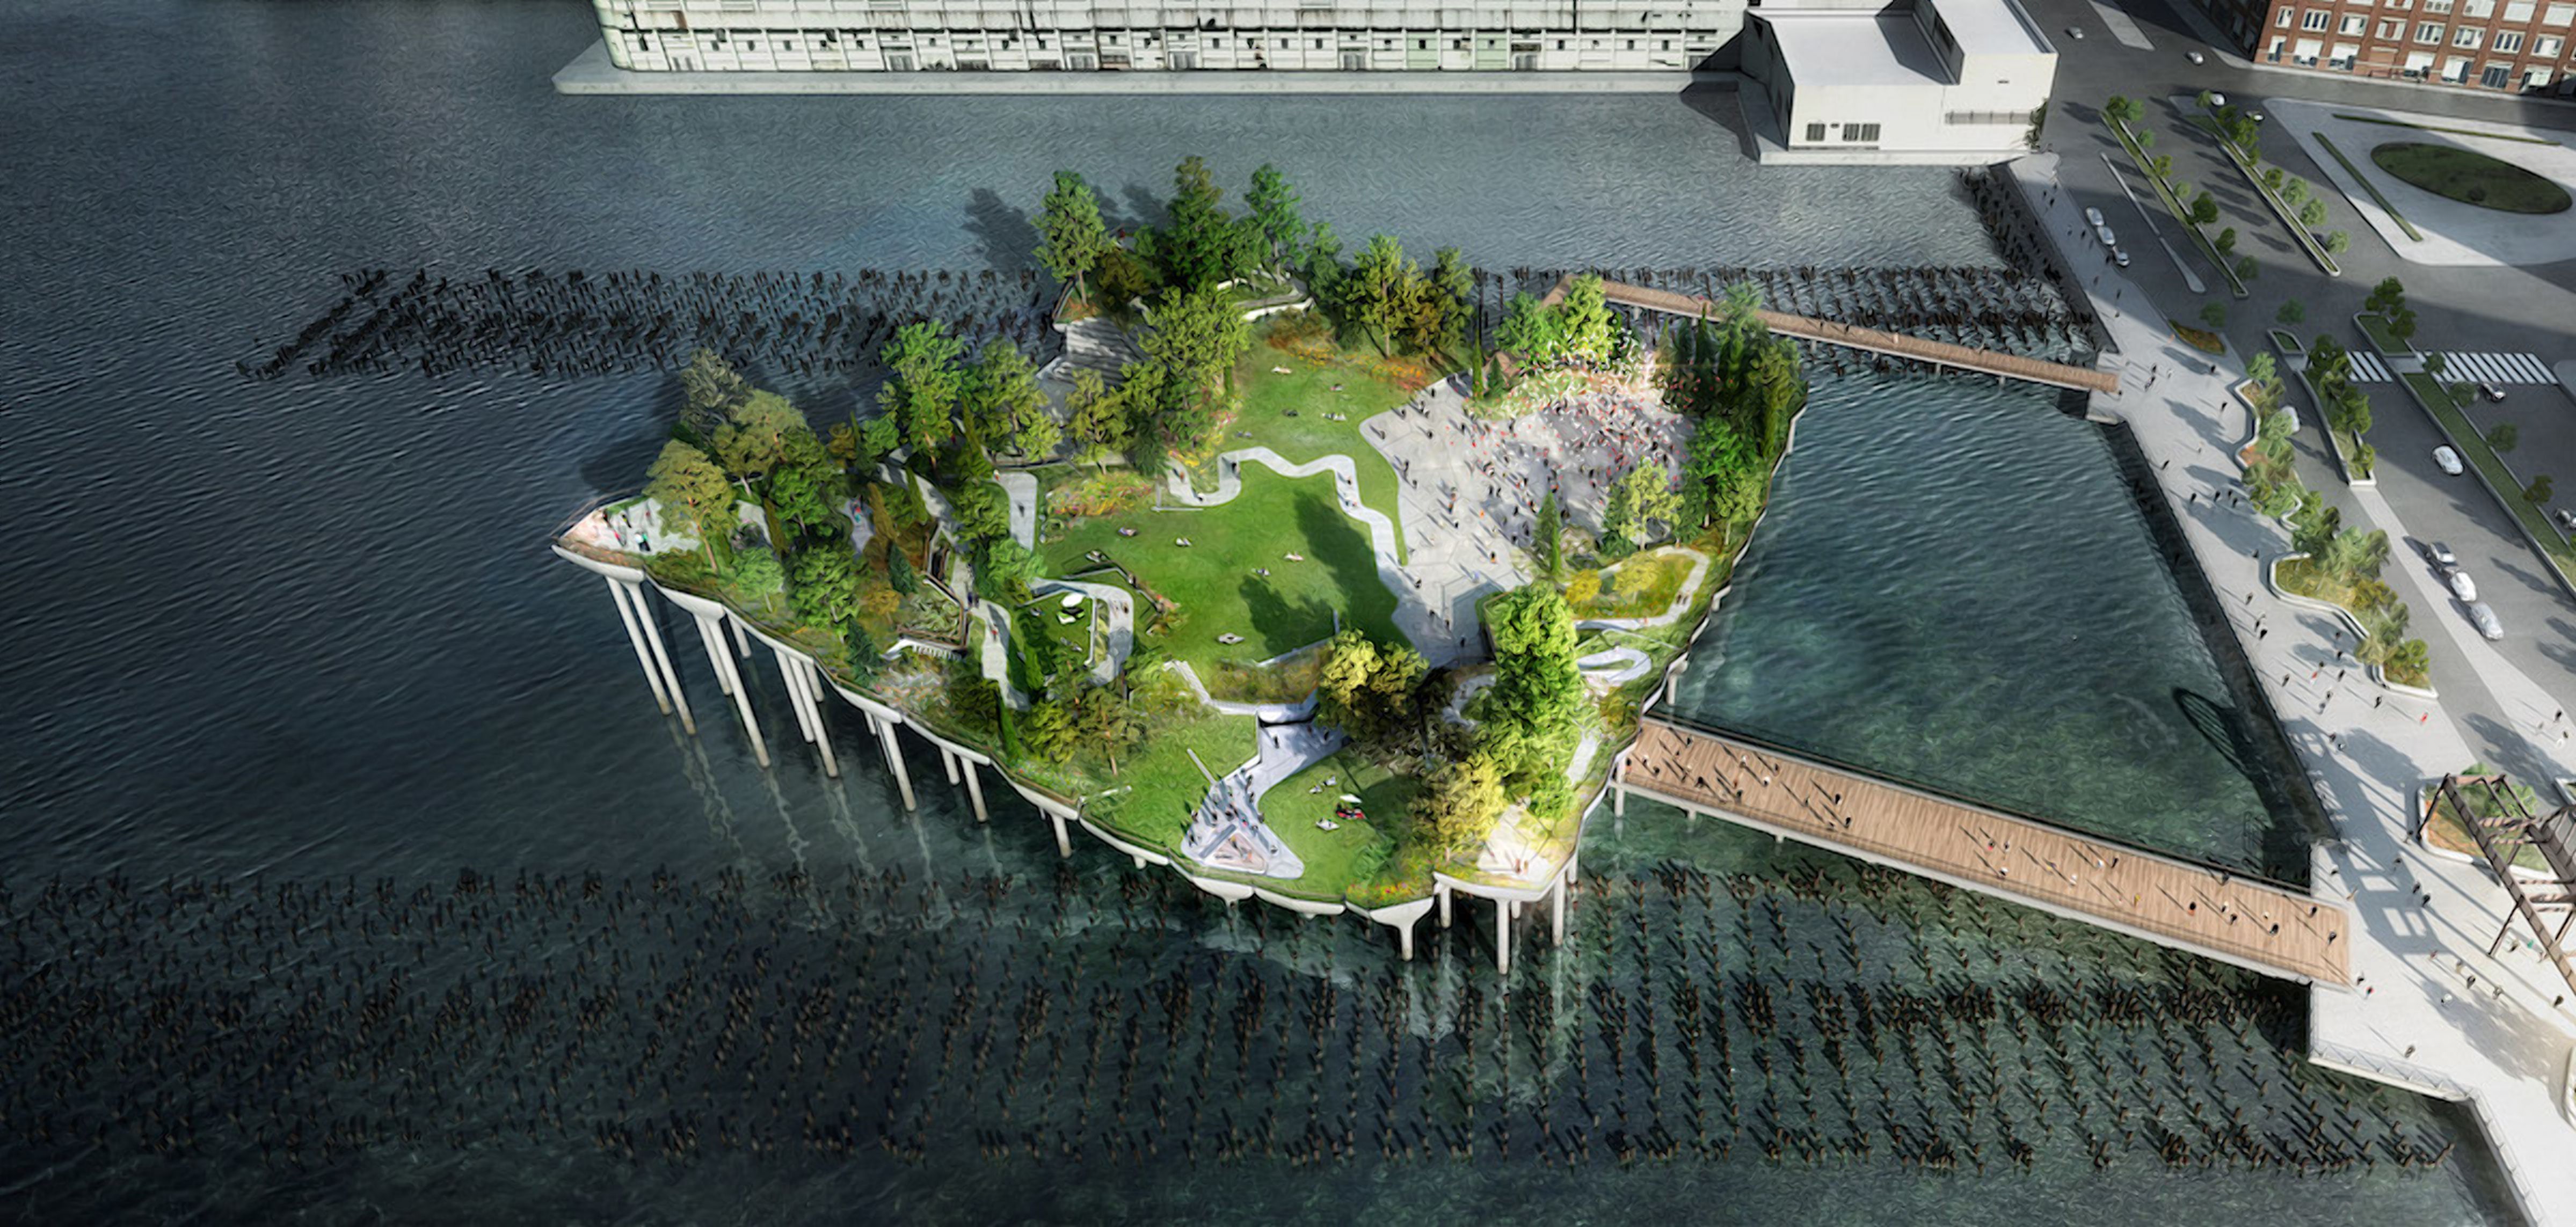 Зеленый остров посреди Нью-Йоркской гавани: фото уникального чудо-парка